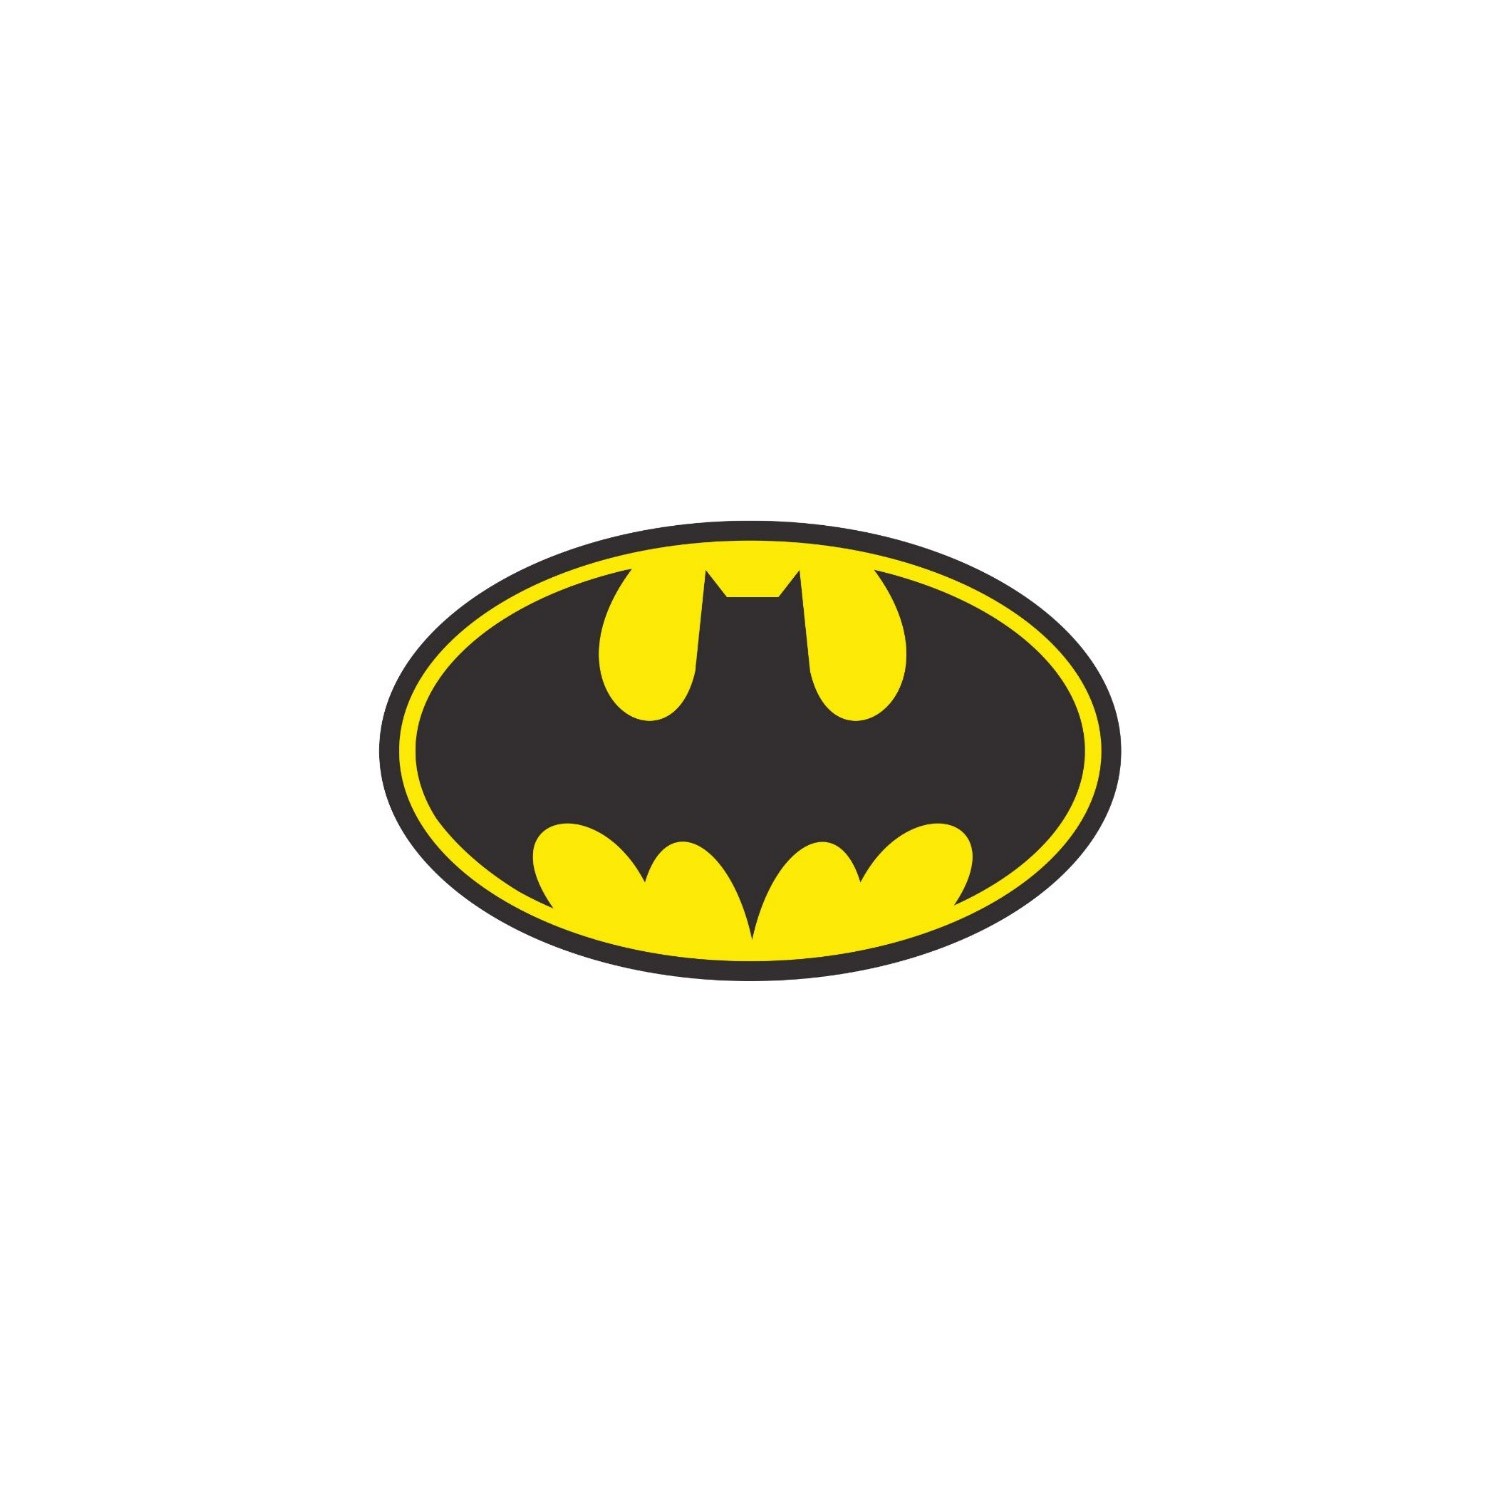 Stickermarket Batman Sticker Seti Fiyatı - Taksit Seçenekleri